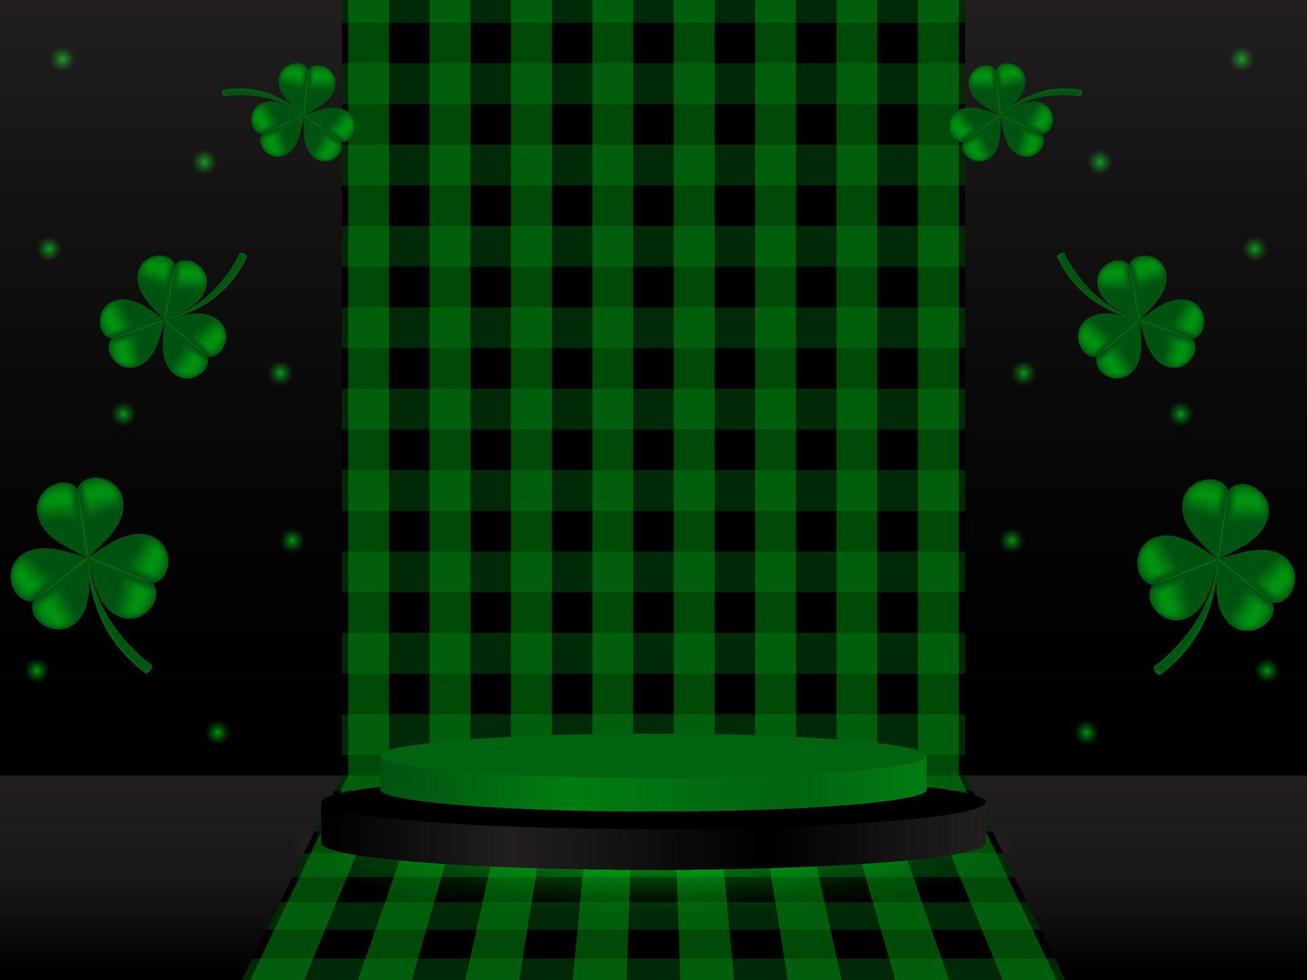 realista Preto e verde 3d cilindro pedestal pódio em xadrez fundo com trevo folha por aí isto. mínimo etapa para produtos demonstração, publicidade exibição vetor